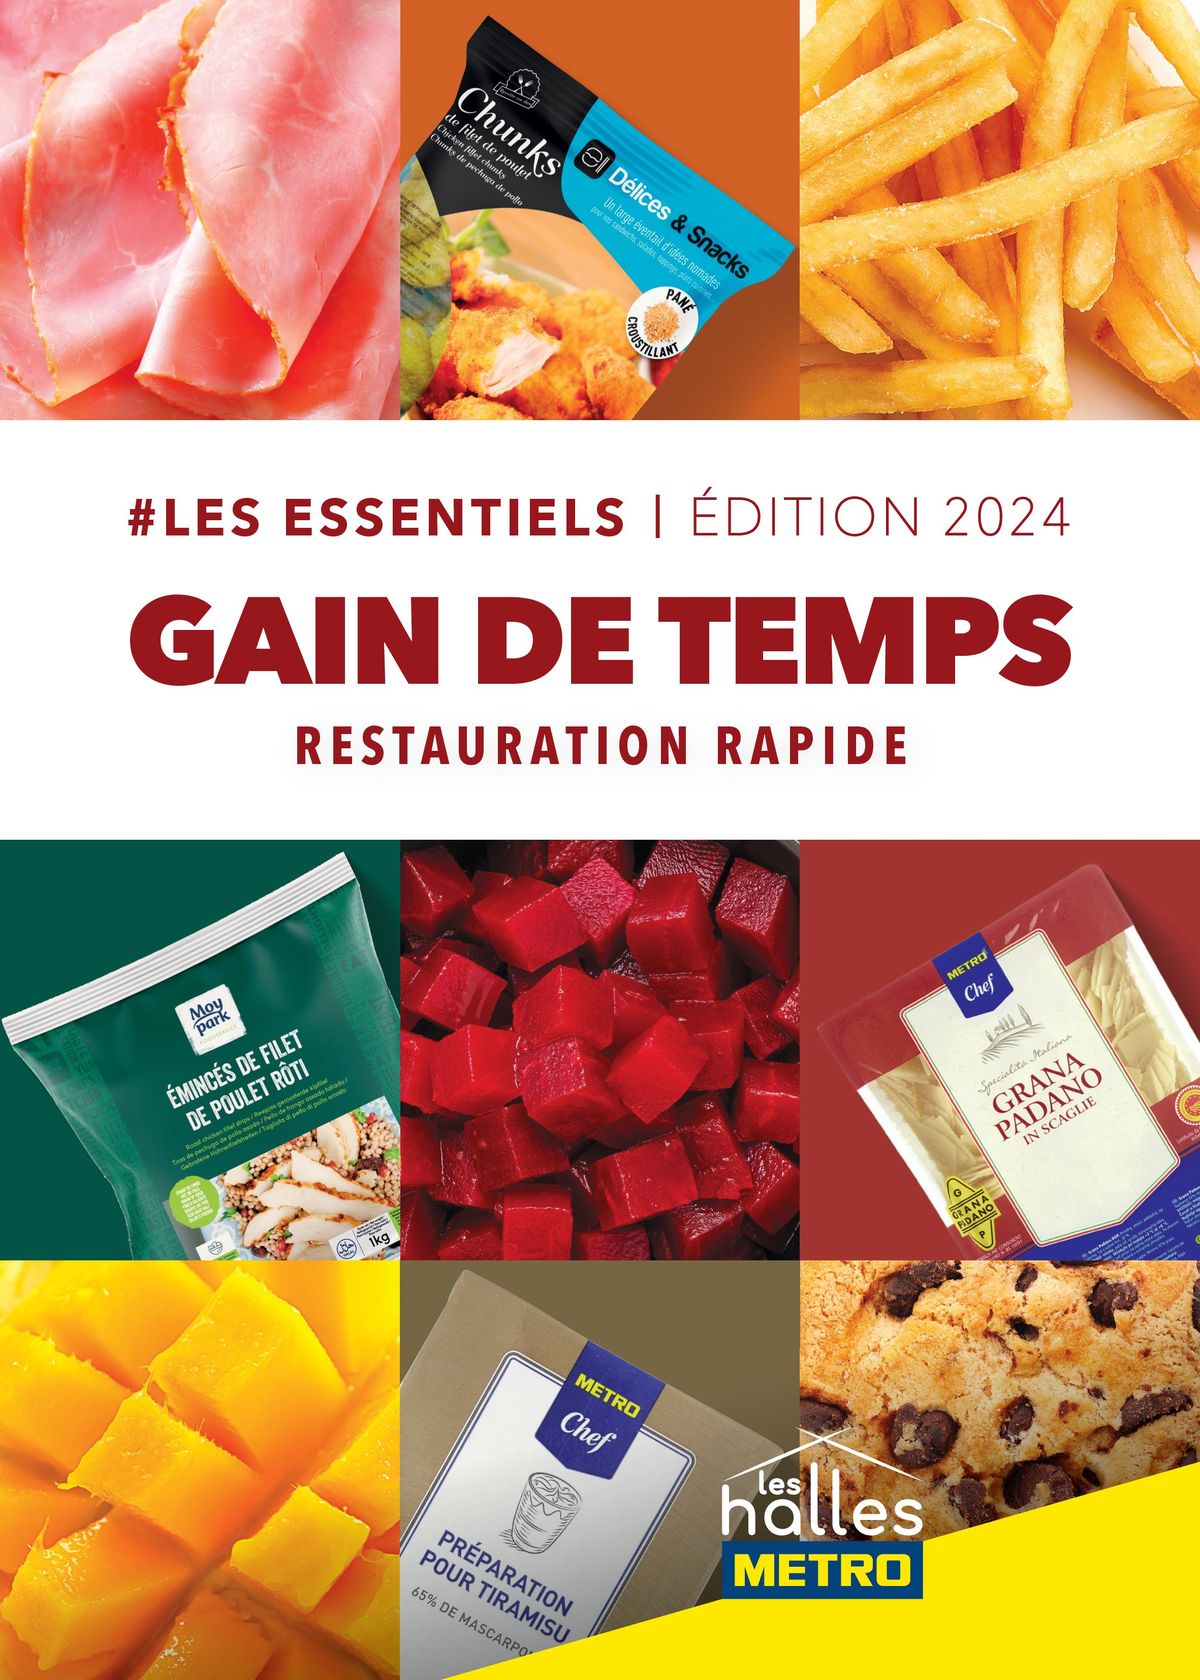 Catalogue GAIN DE TEPMS ÉDITION 2024, page 00001